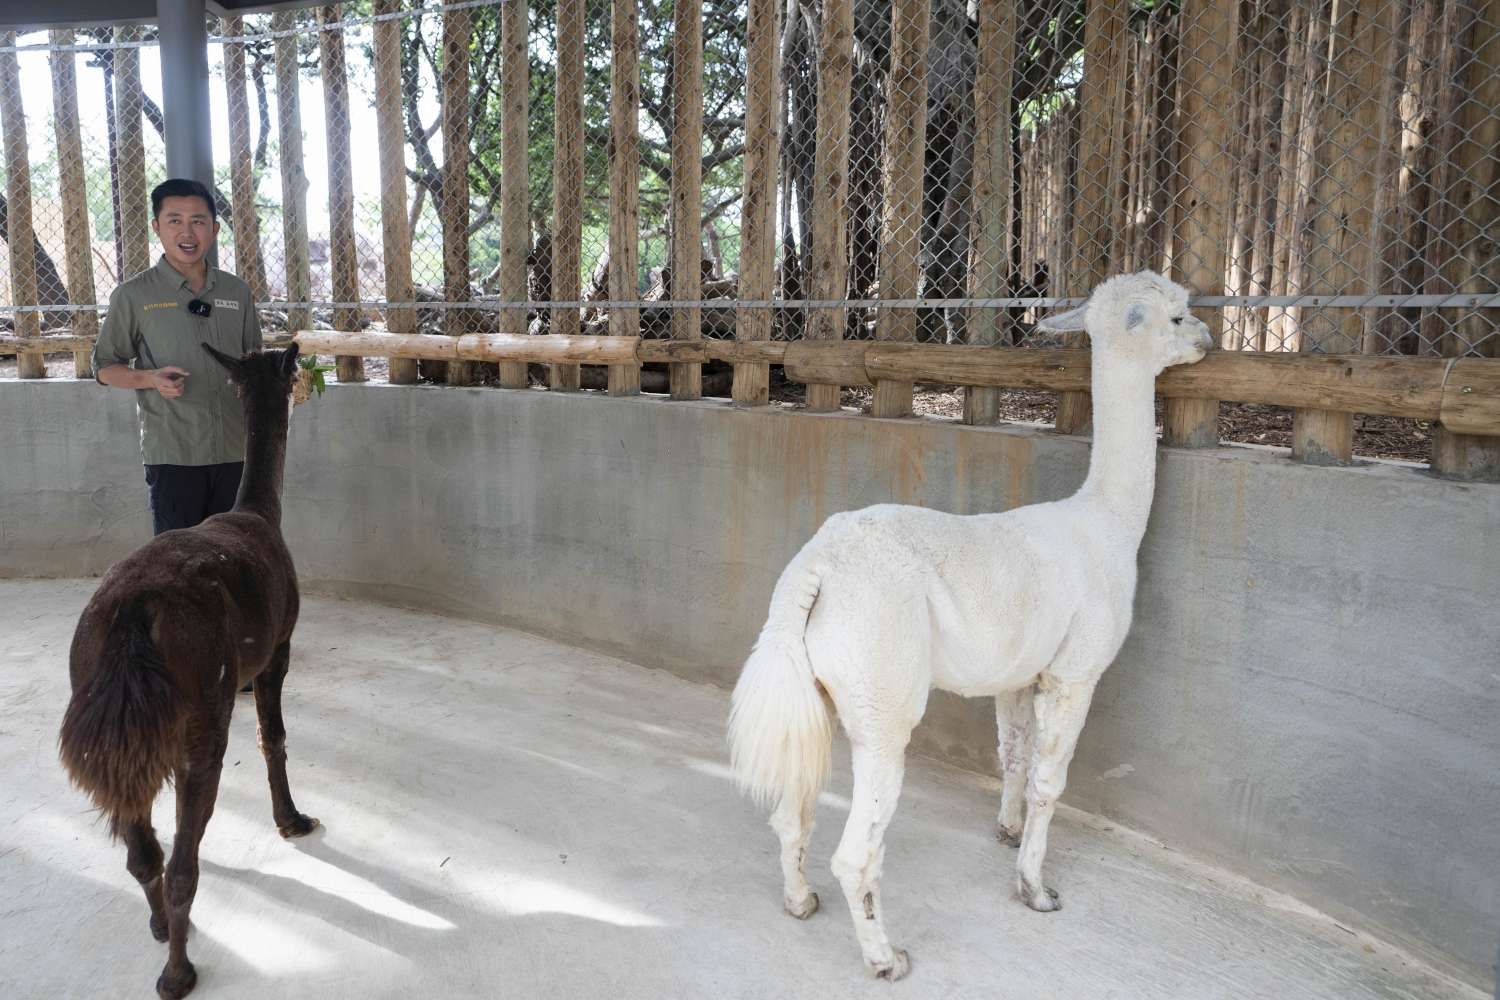 新竹市動物園有新動物夥伴了，就是來自壽山動物園的兩隻羊駝咖啡與牛奶。